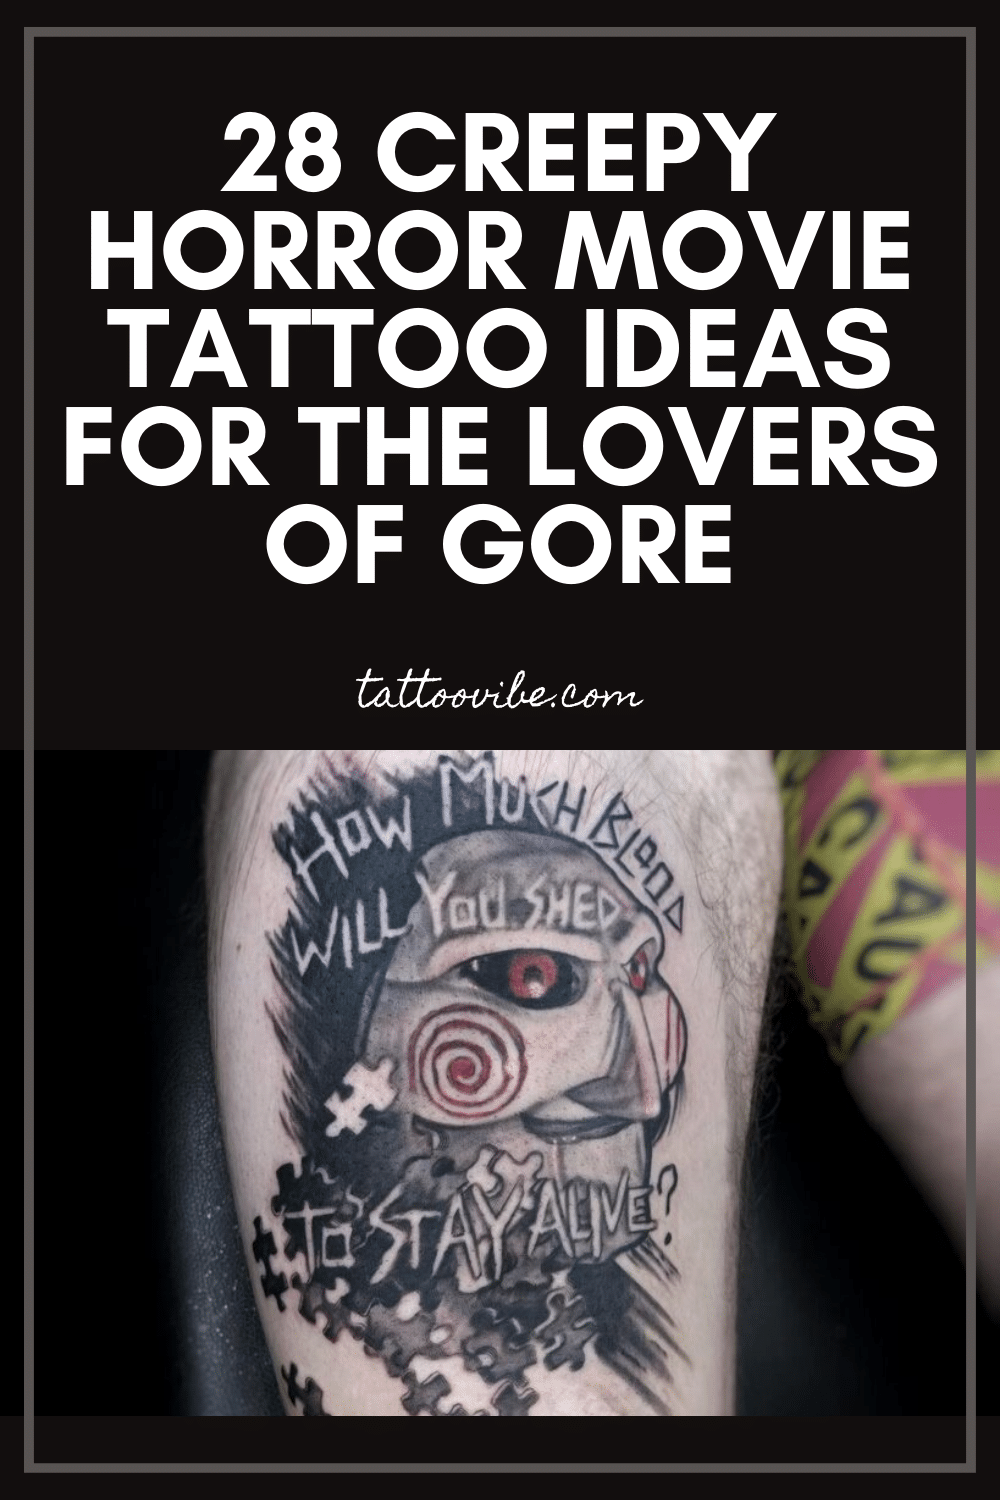 28 espeluznantes ideas de tatuajes de películas de terror para los amantes del gore